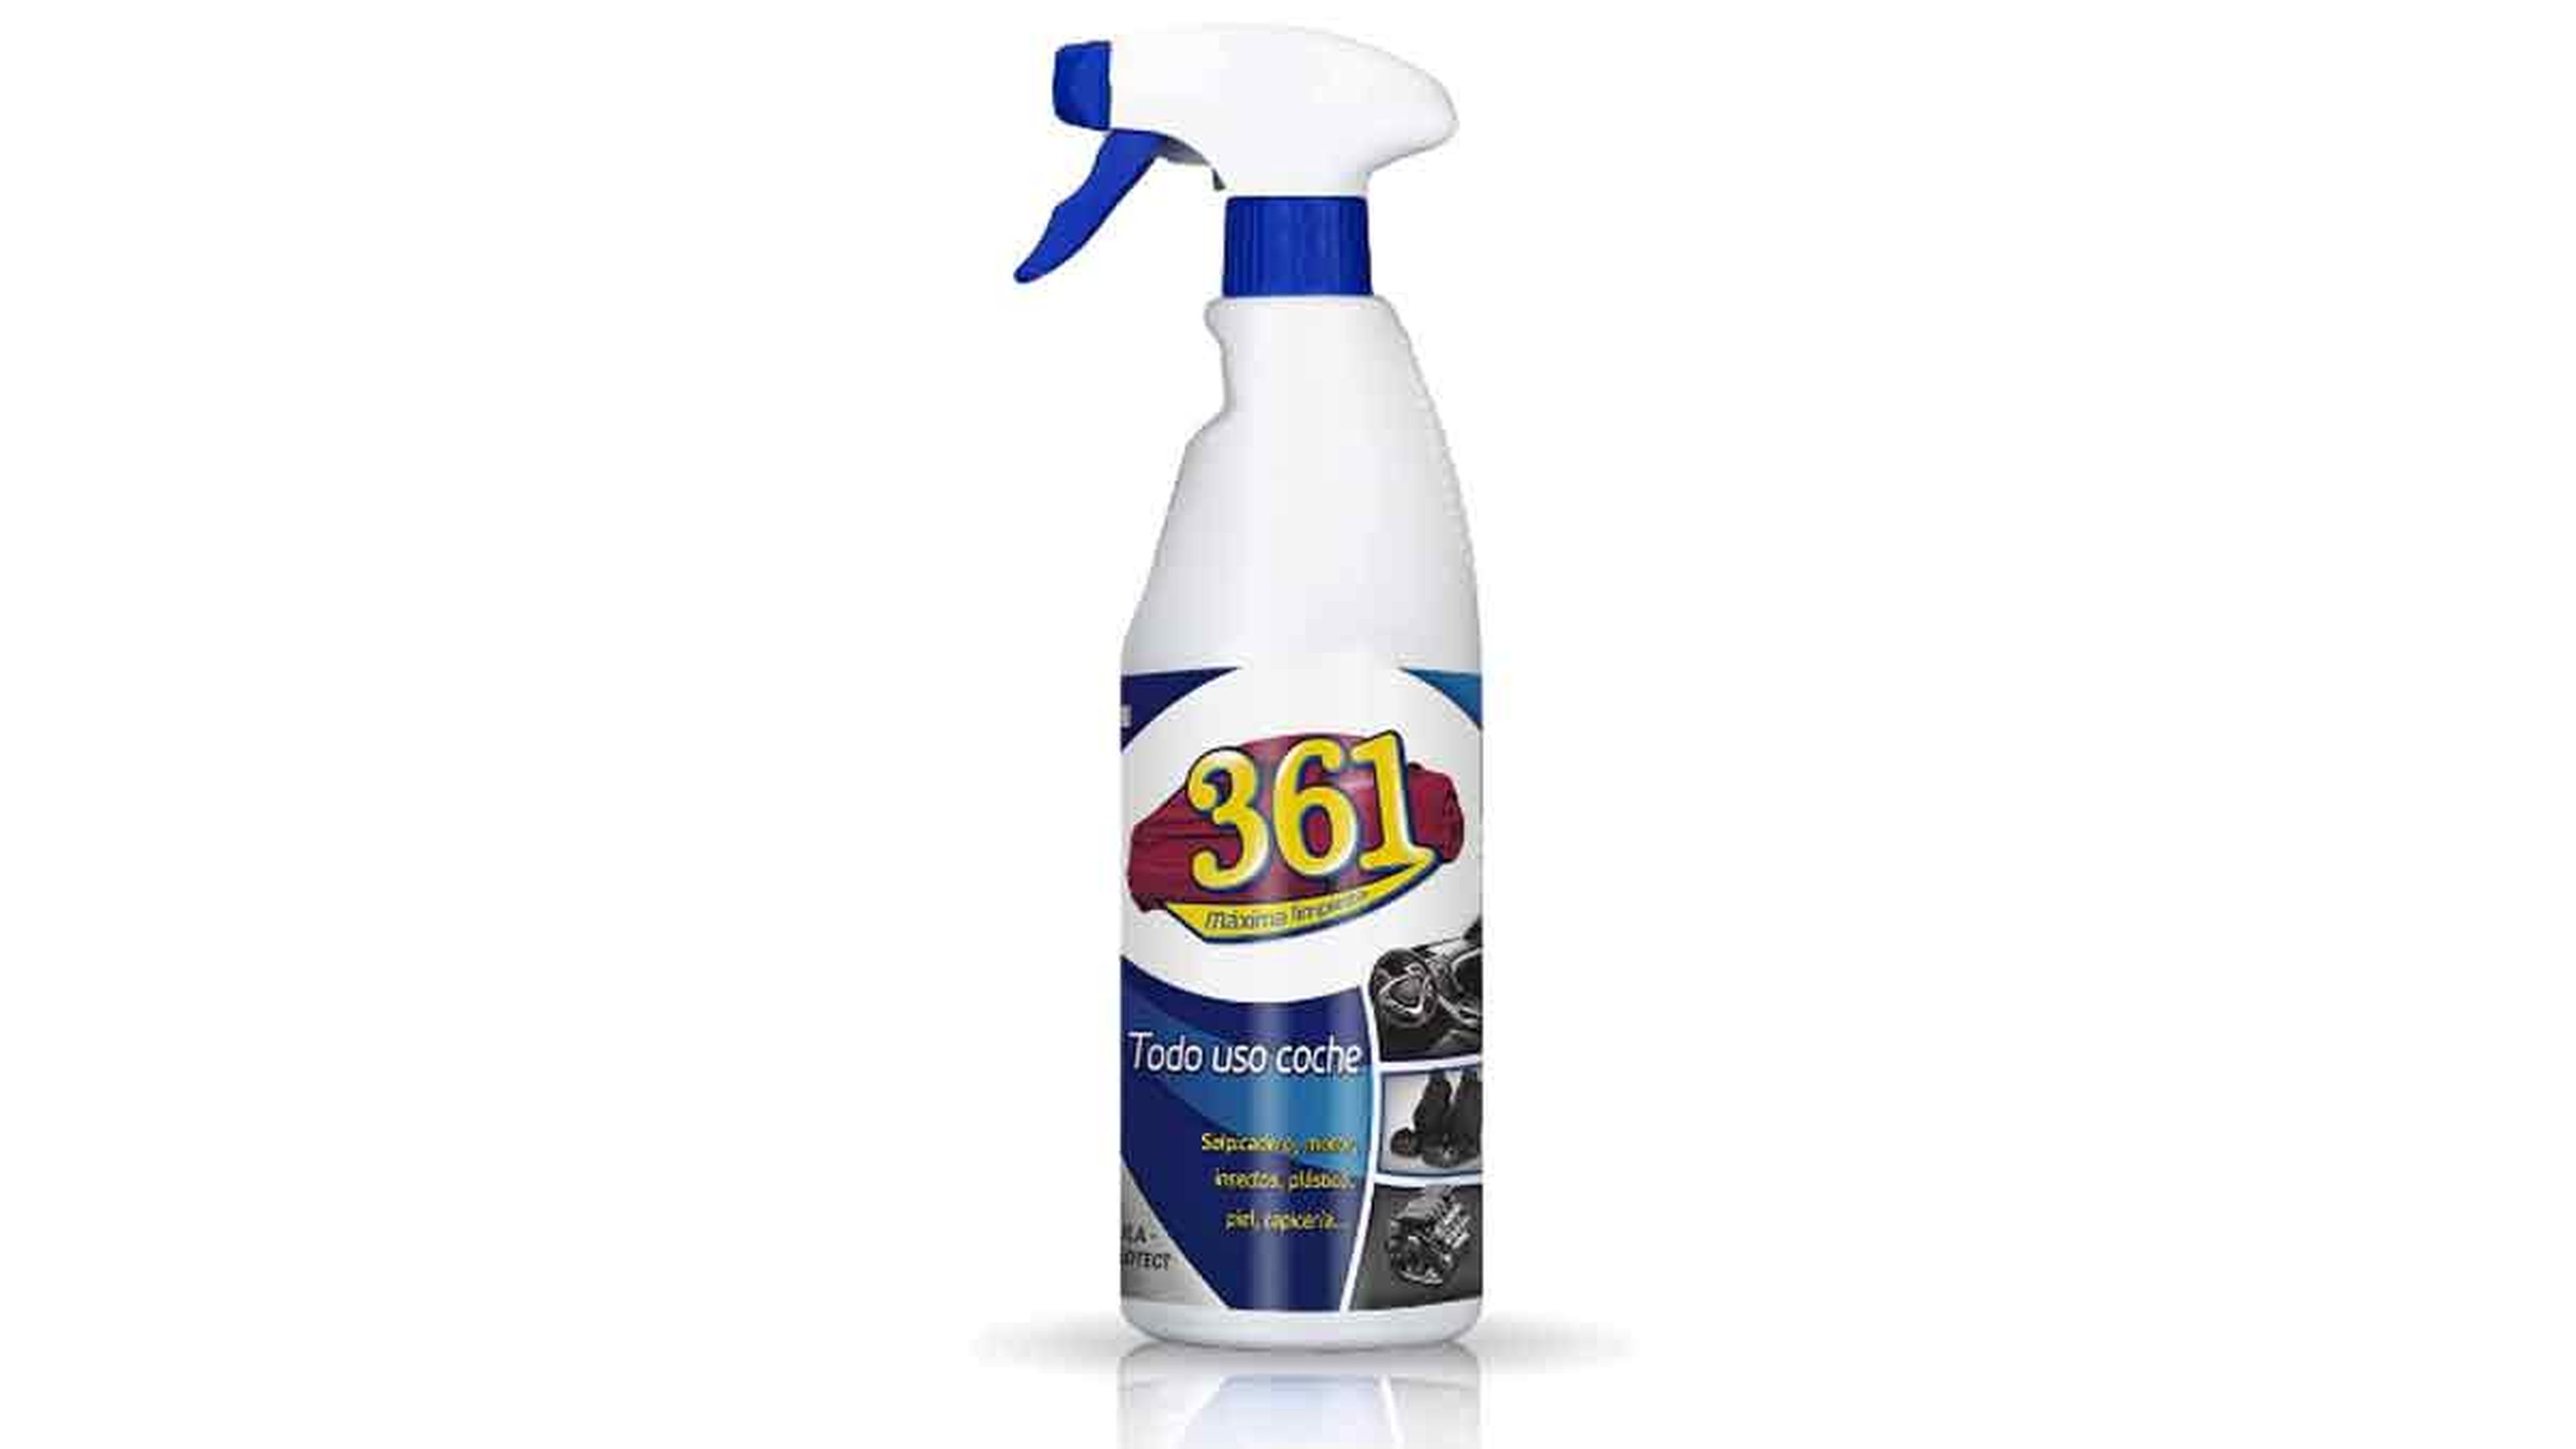 Spray para limpiar el coche 361 de Sisbrill a la venta en Amazon